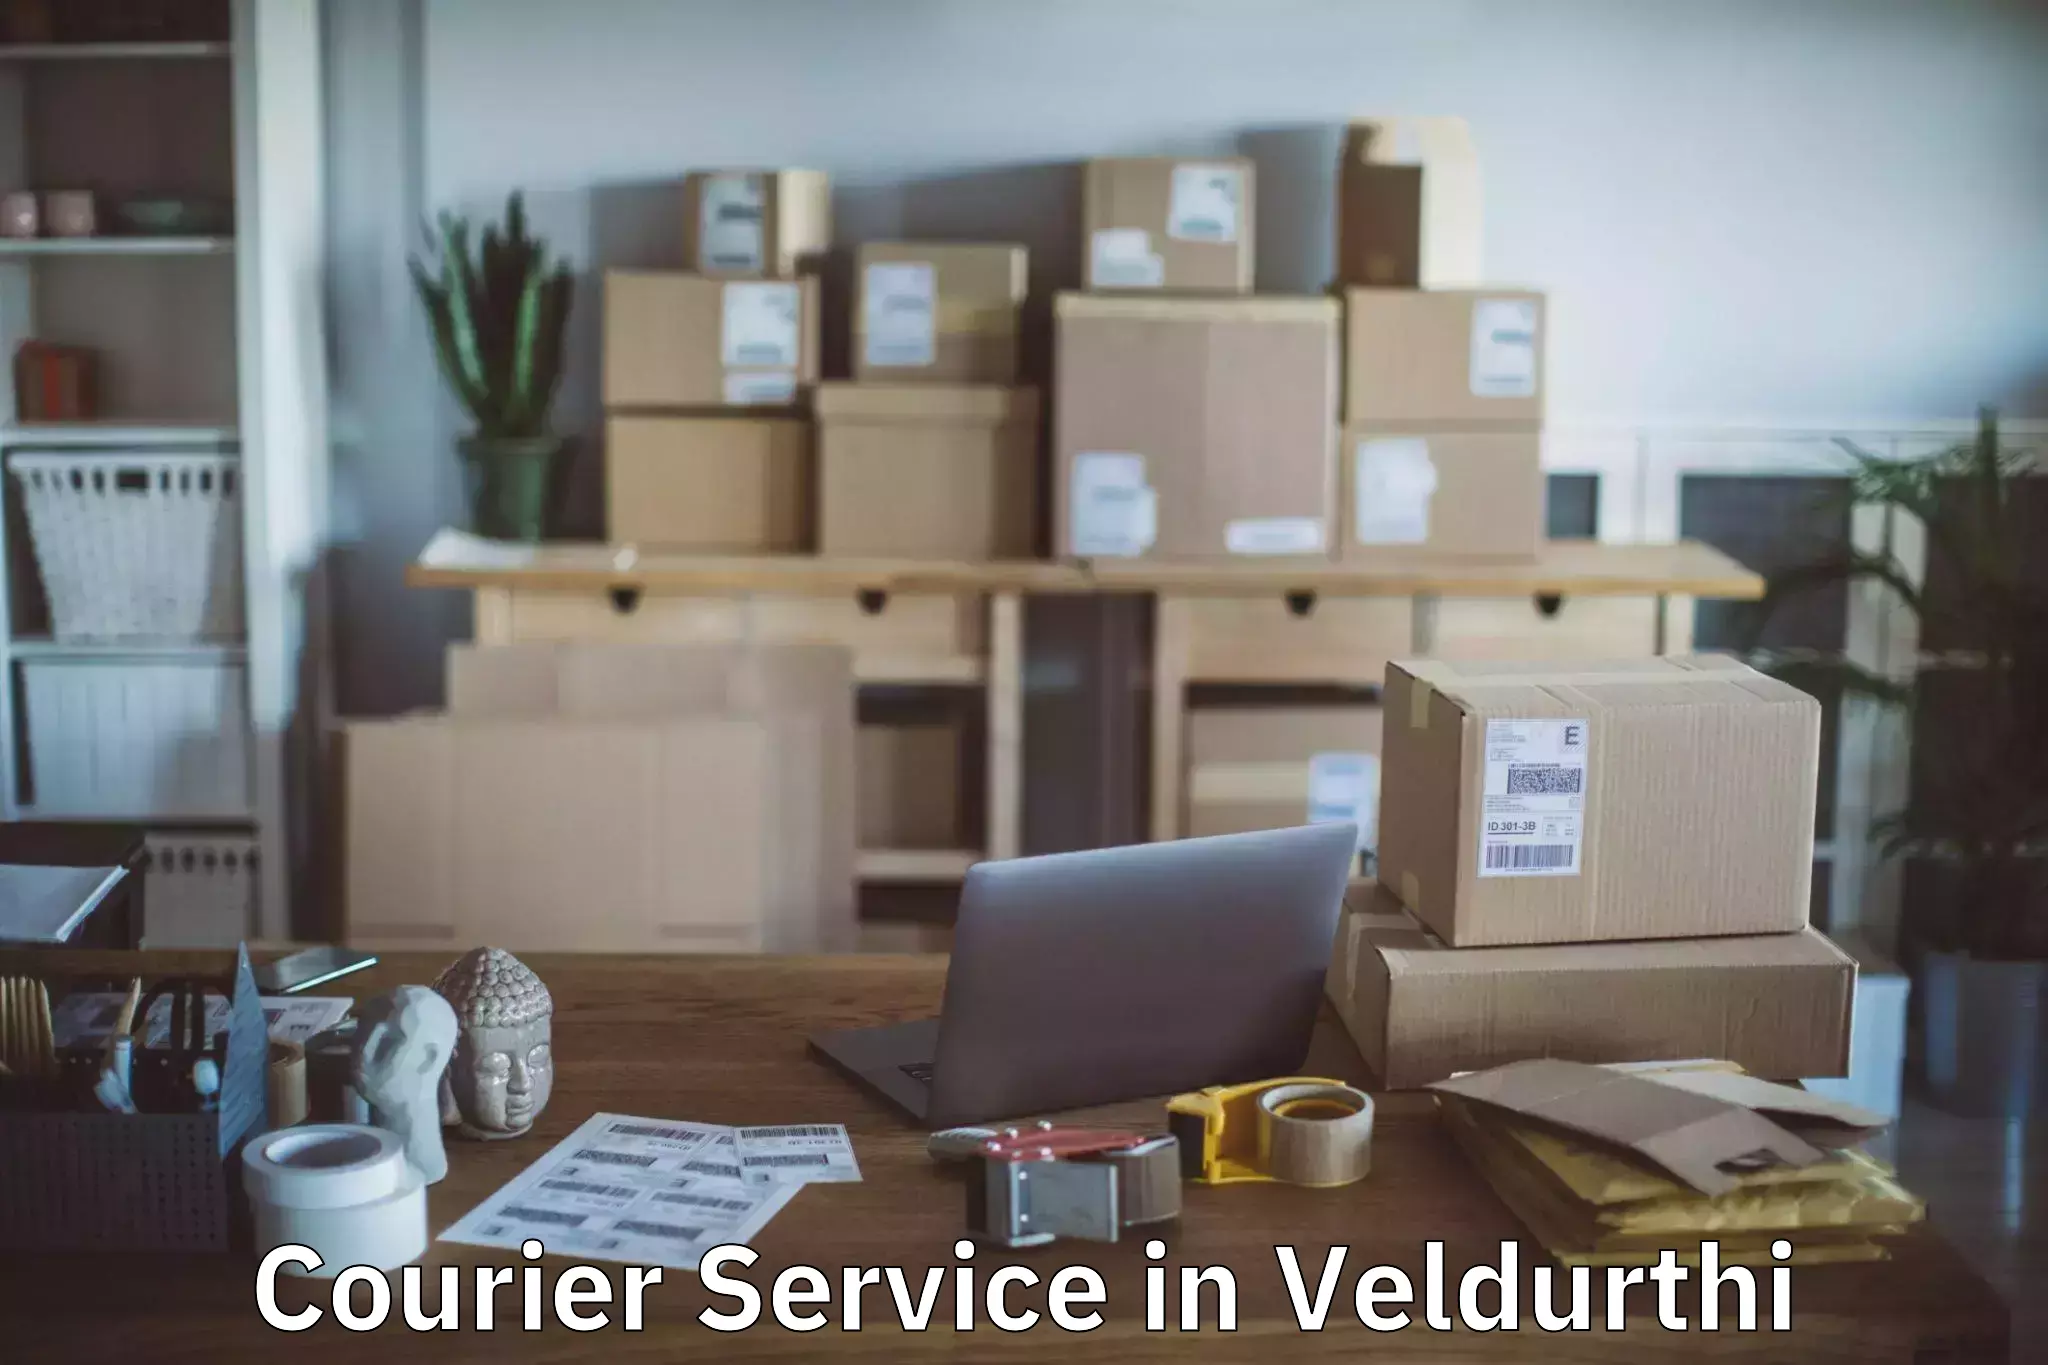 Courier services in Veldurthi